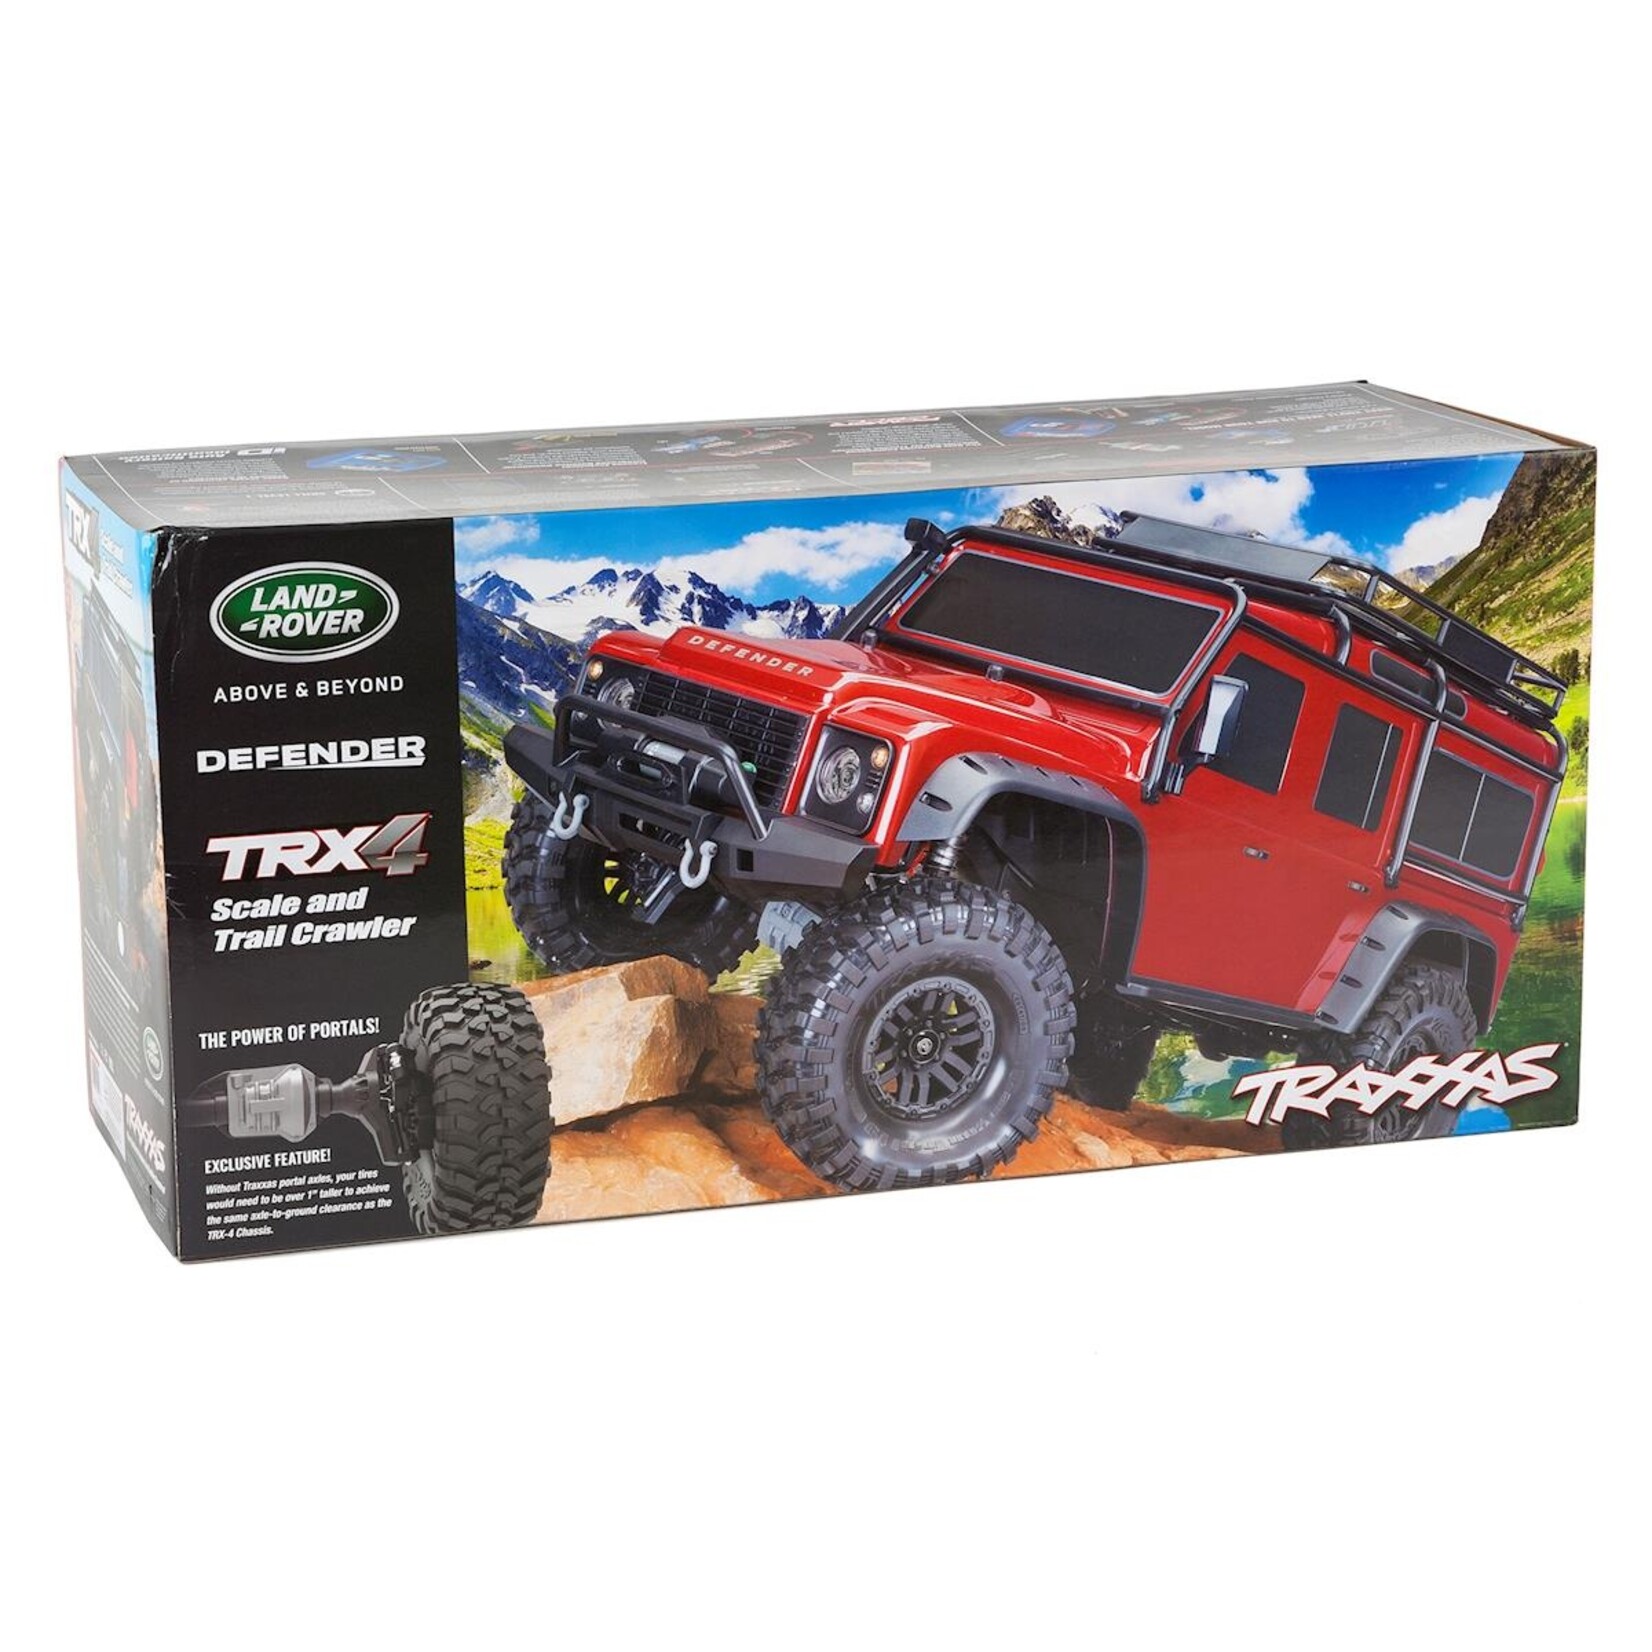 Traxxas Traxxas TRX-4 1/10 Scale Trail Rock Crawler w/Land Rover Defender Body (Silver w/XL-5 ESC & TQi 2.4GHz Radio #82056-4-SLVR